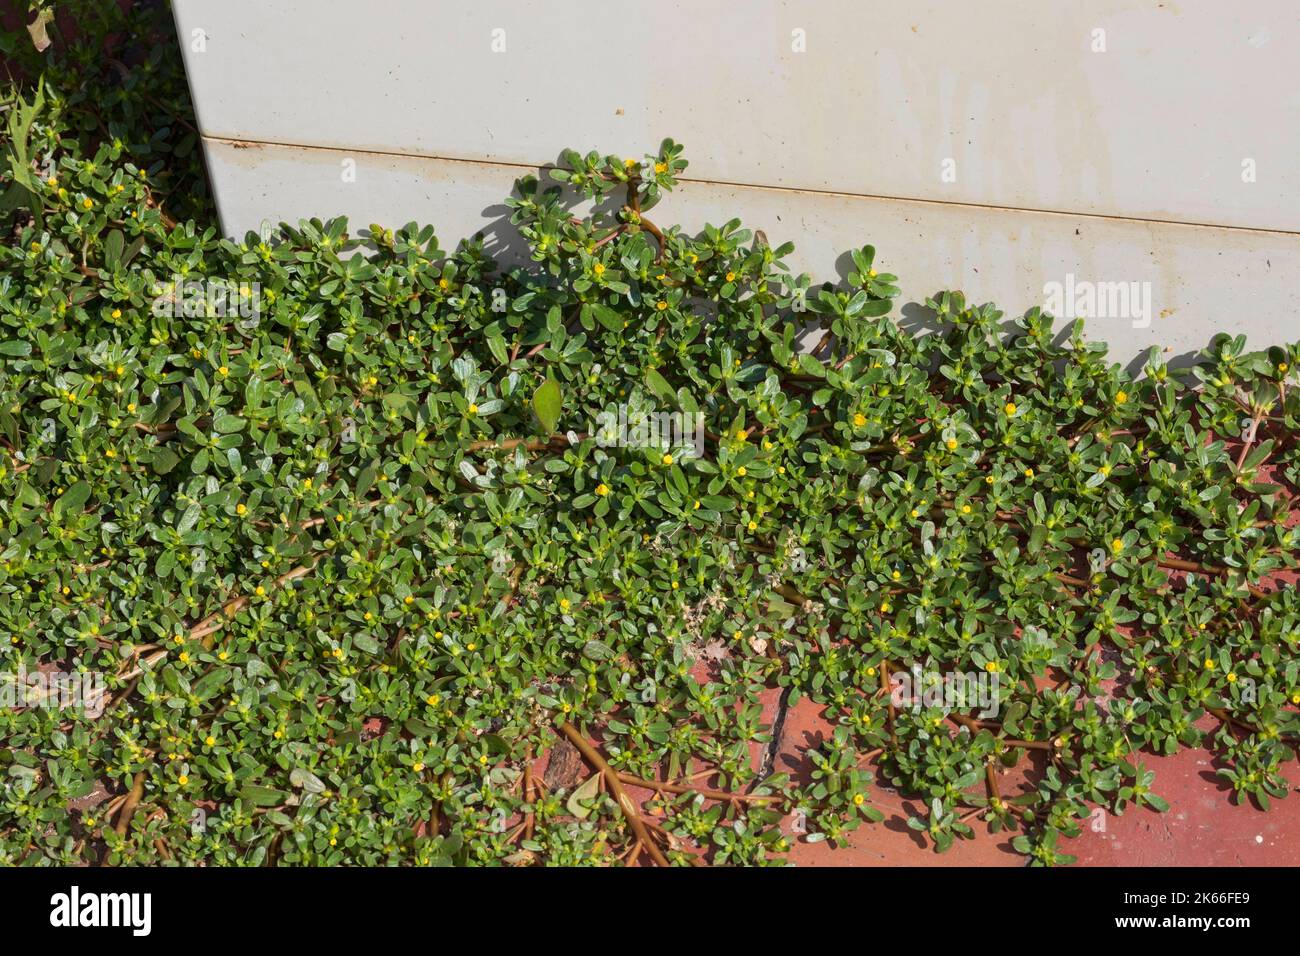 Voie commune, voie verte (Portulaca oleracea), en croissance dans les espaces de pavage, Allemagne Banque D'Images